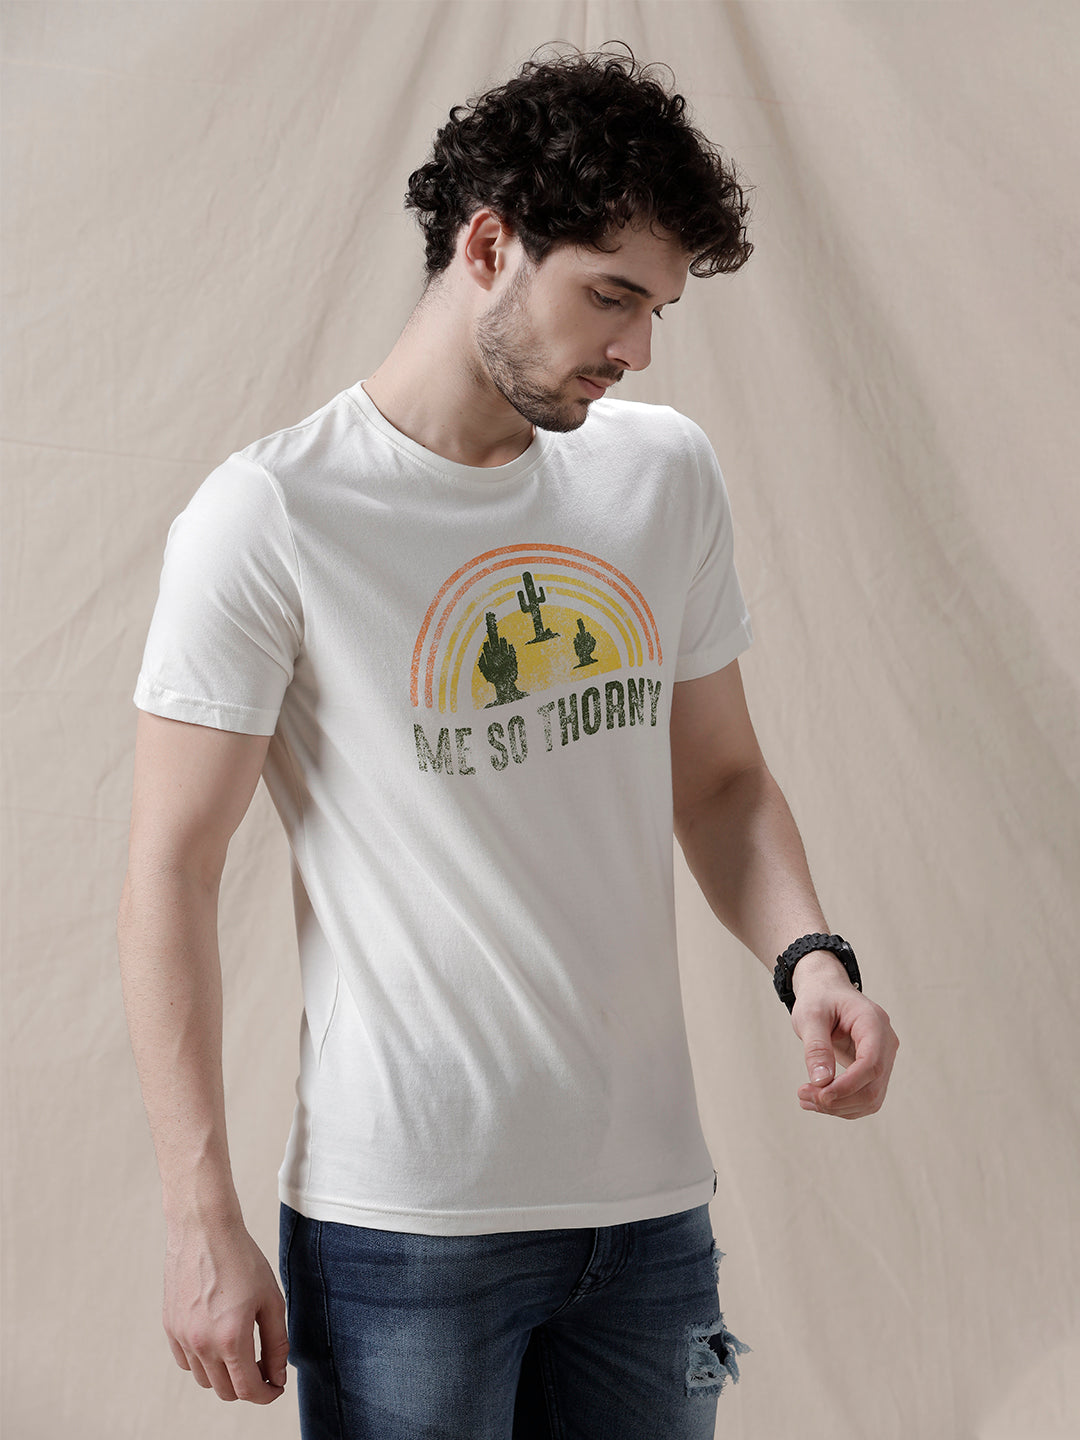 So Thorny Printed T-Shirt